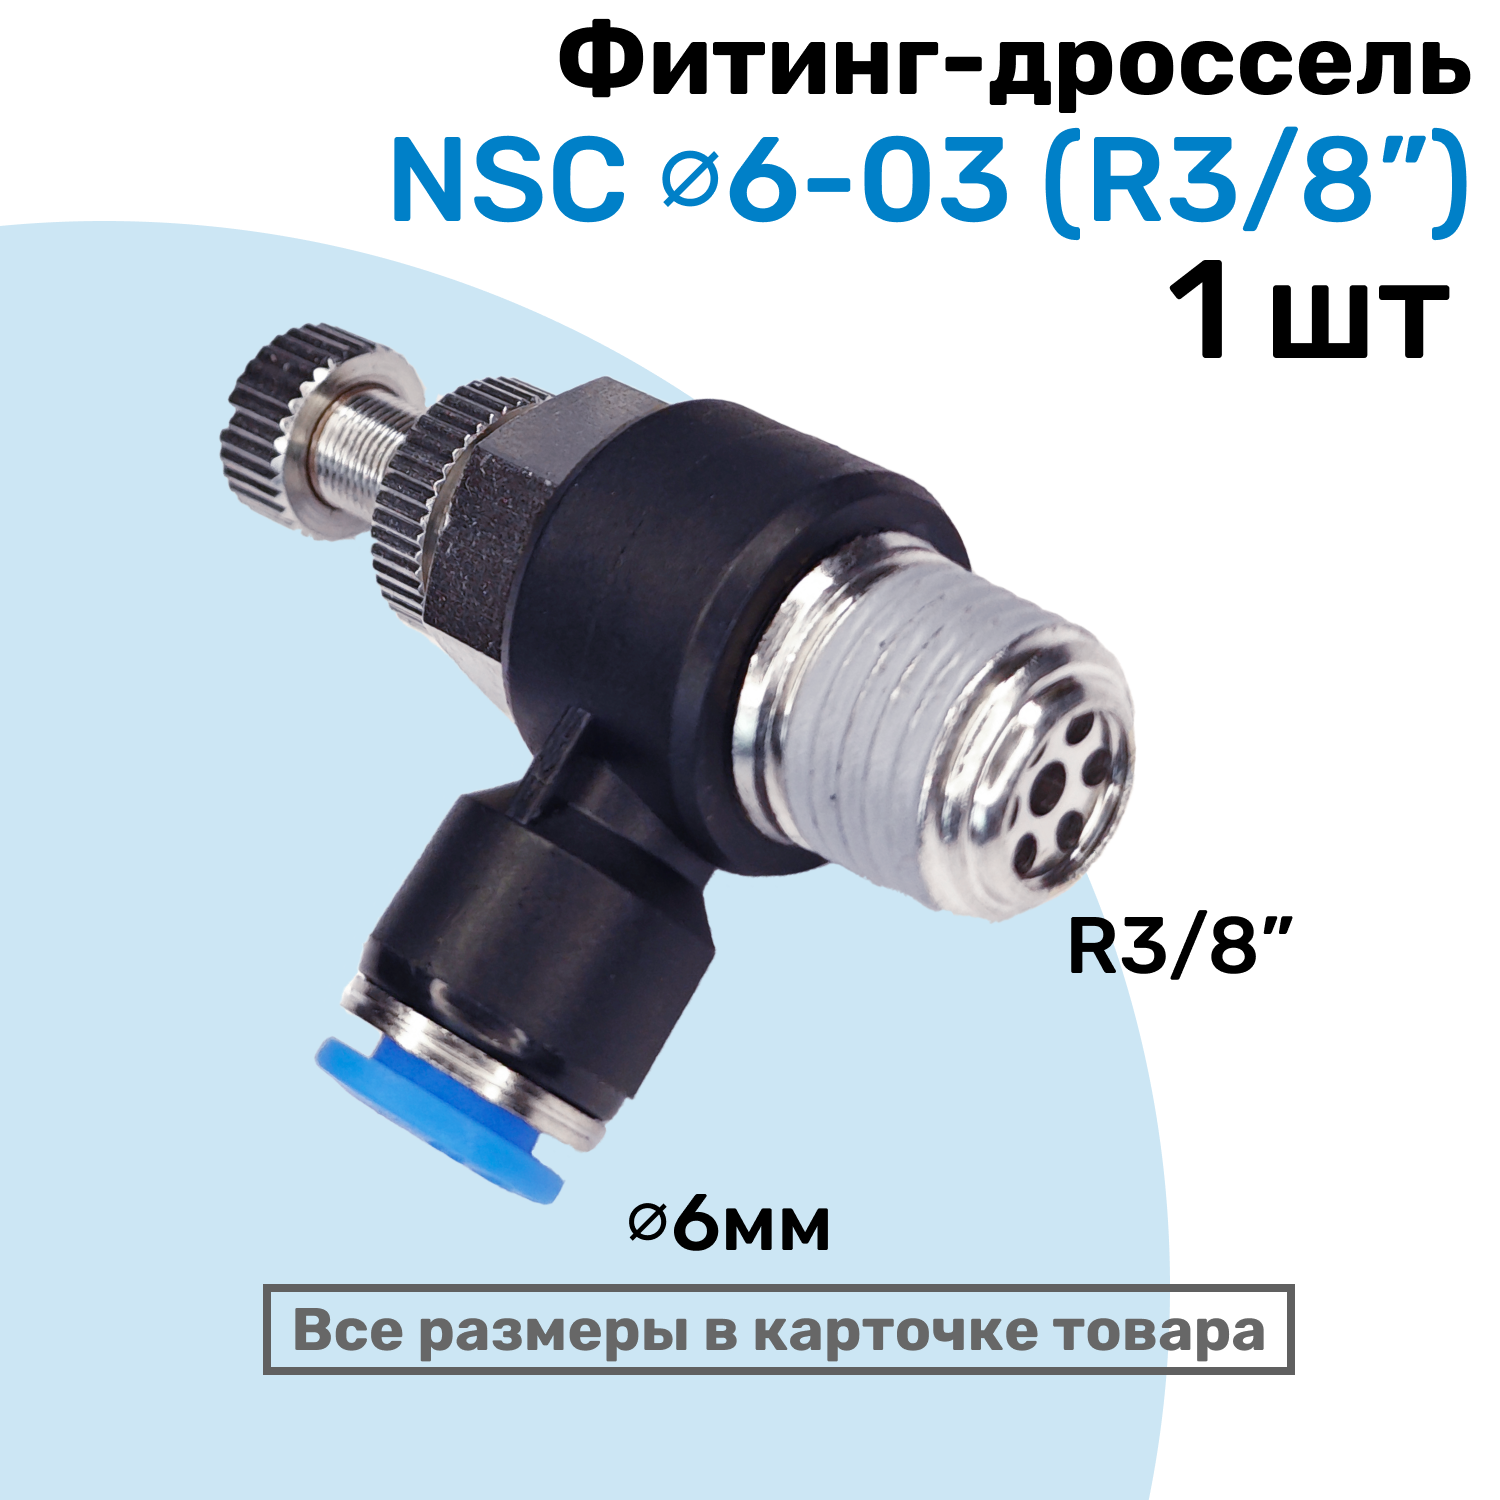 Угловой регулятор расхода воздуха, Фитинг-дроссель с обратным клапаном NSC 06-03 (3/8"), Пневмофитинг NBPT